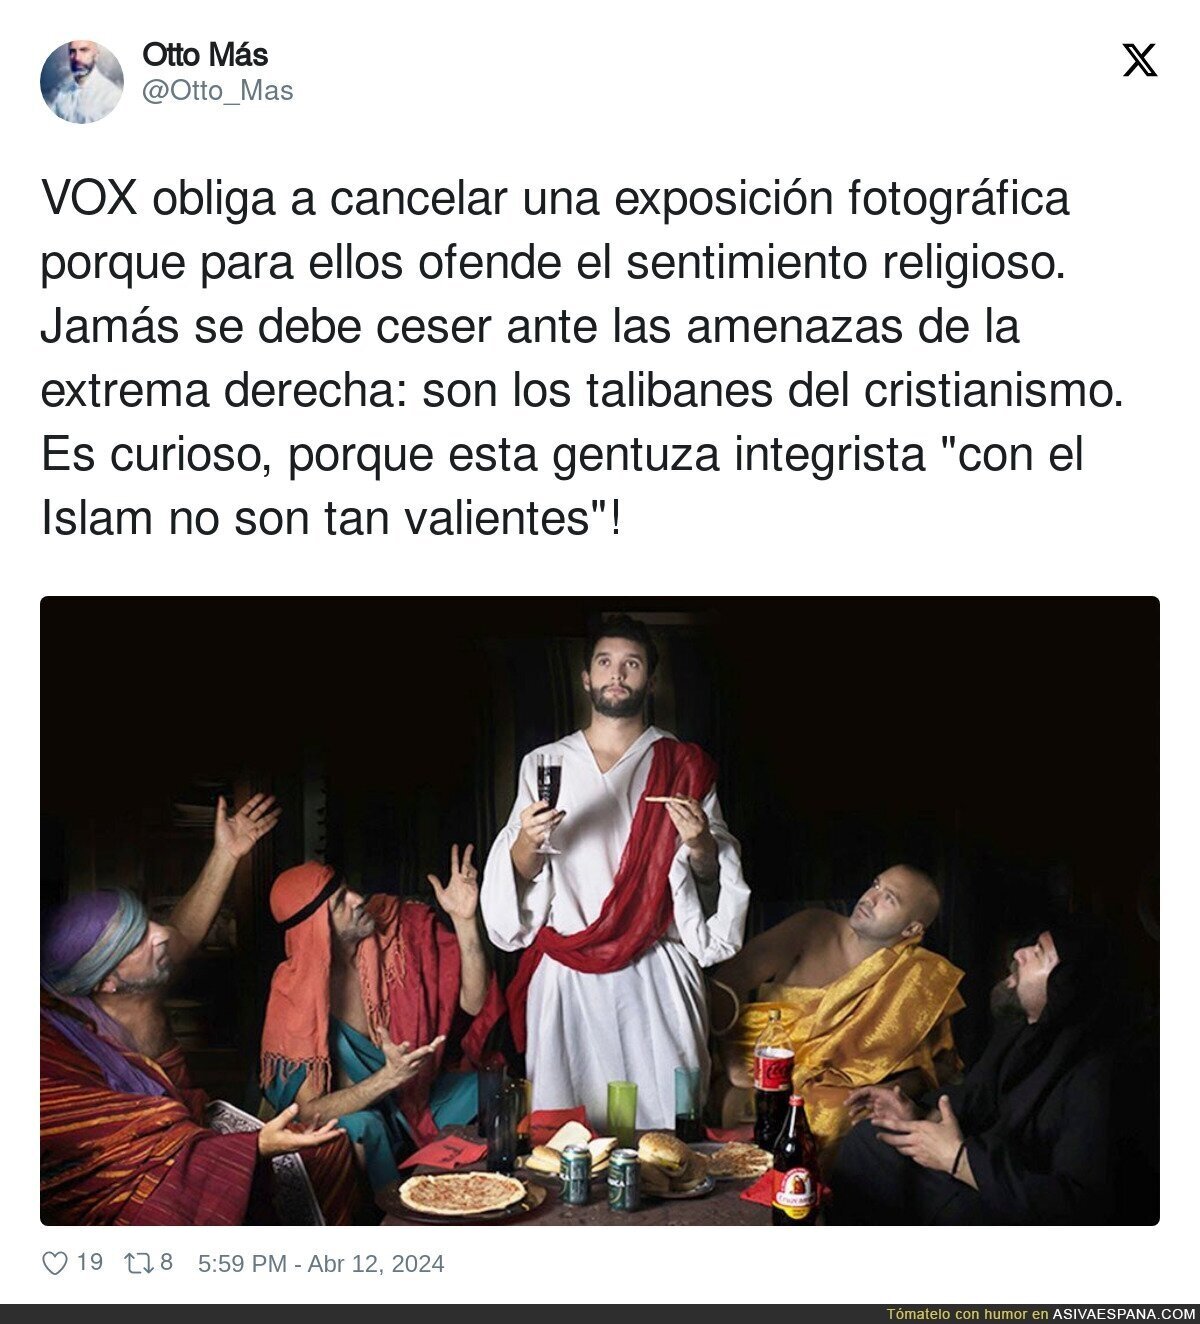 VOX obliga a cancelar una exposición fotográfica